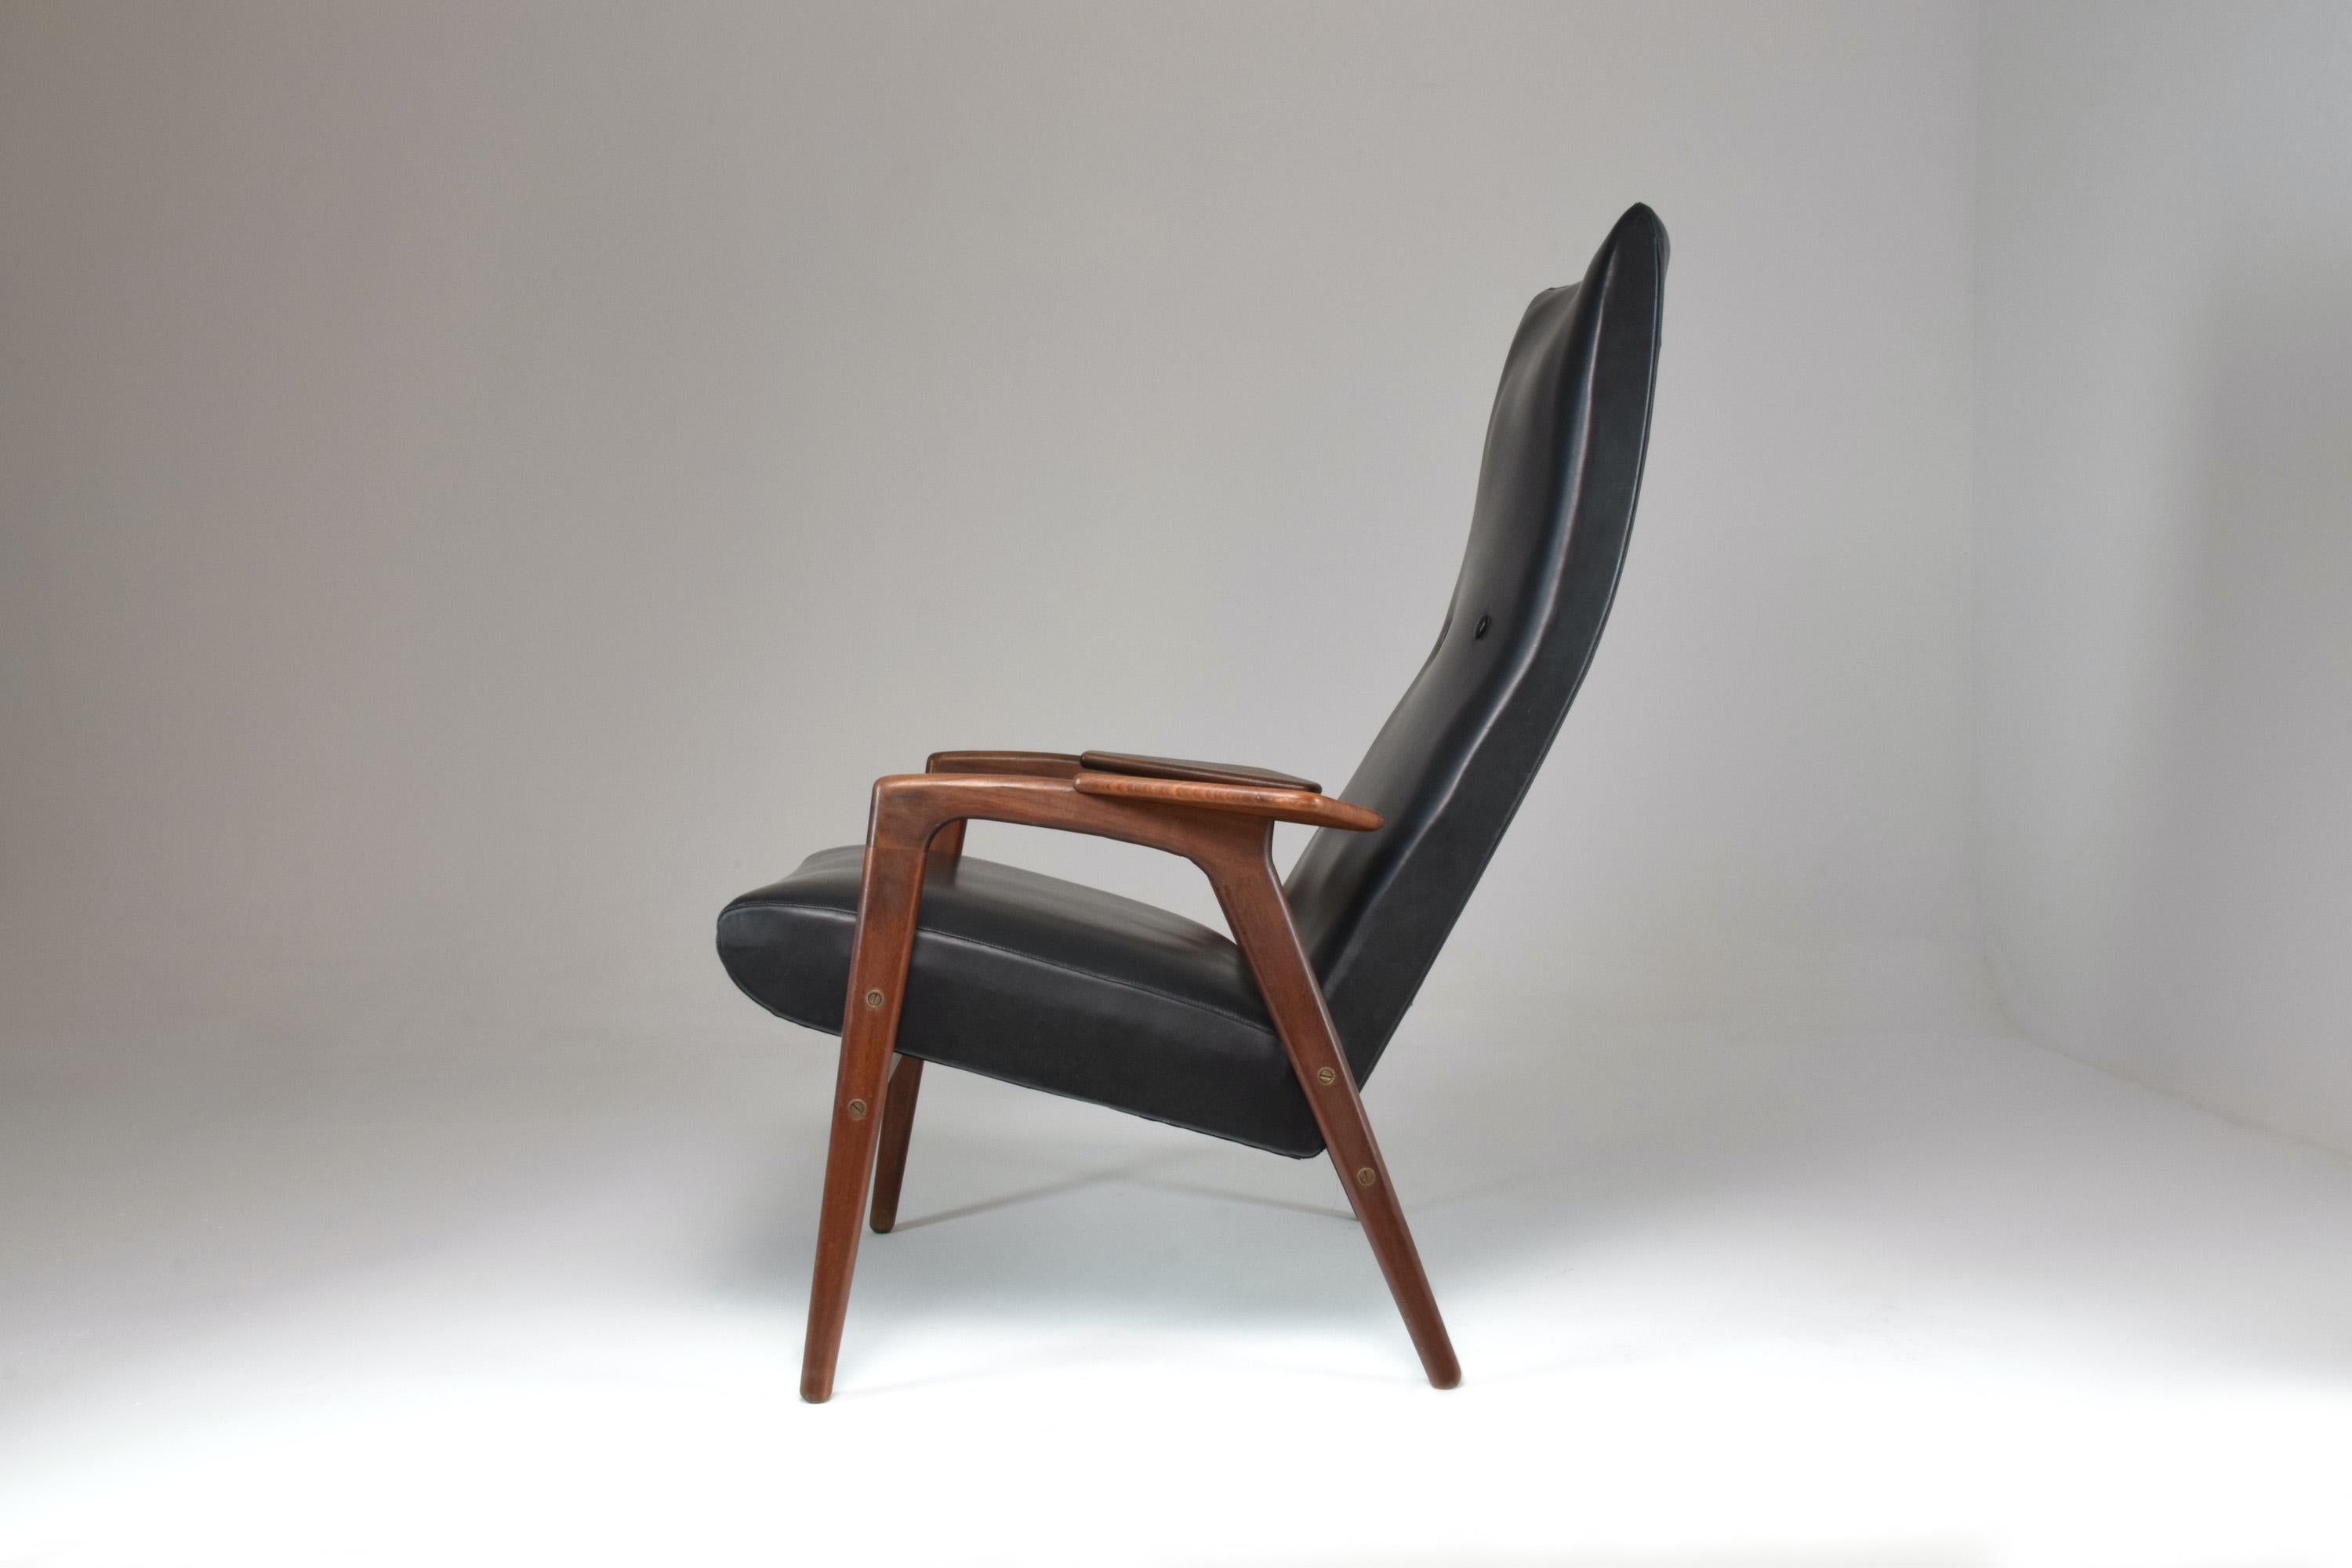 La remarquable chaise longue danoise Ruster, créée par le designer suédois Yngve Ekström et éditée par Pastoe dans les années 1960.
Le cuir est dans son état d'origine, le cadre a fait l'objet d'une finition experte. 
Yngve Ekstrôm était un designer